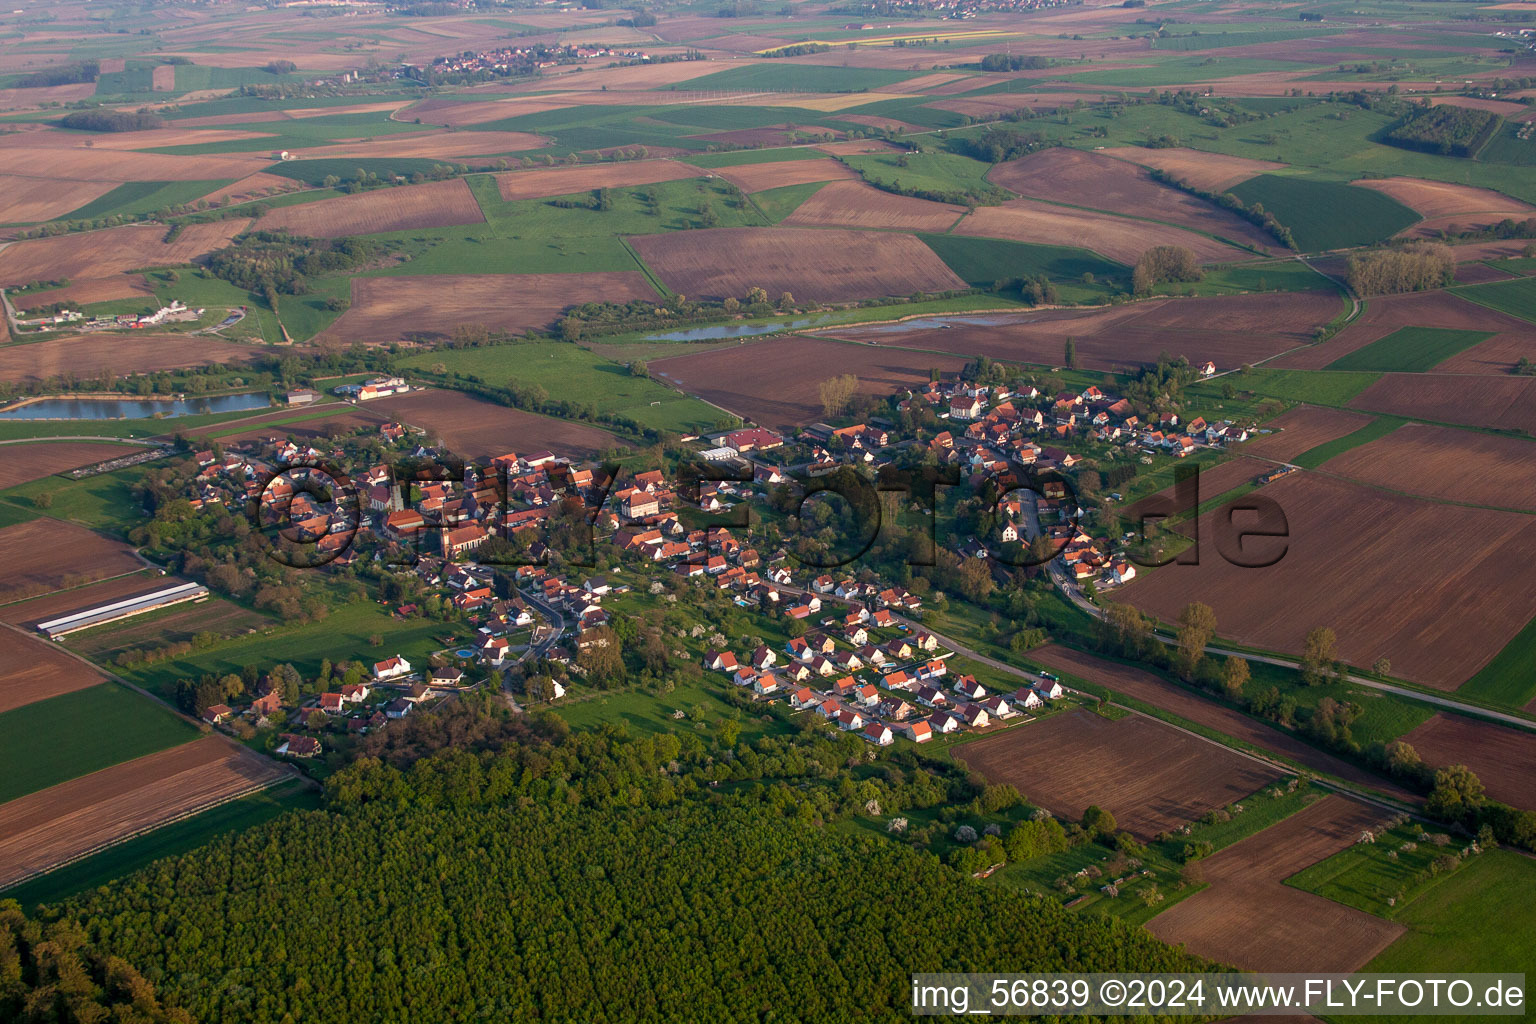 Luftbild von Dorf - Ansicht am Rande von landwirtschaftlichen Feldern und Nutzflächen in Kutzenhausen in Grand Est im Bundesland Bas-Rhin, Frankreich